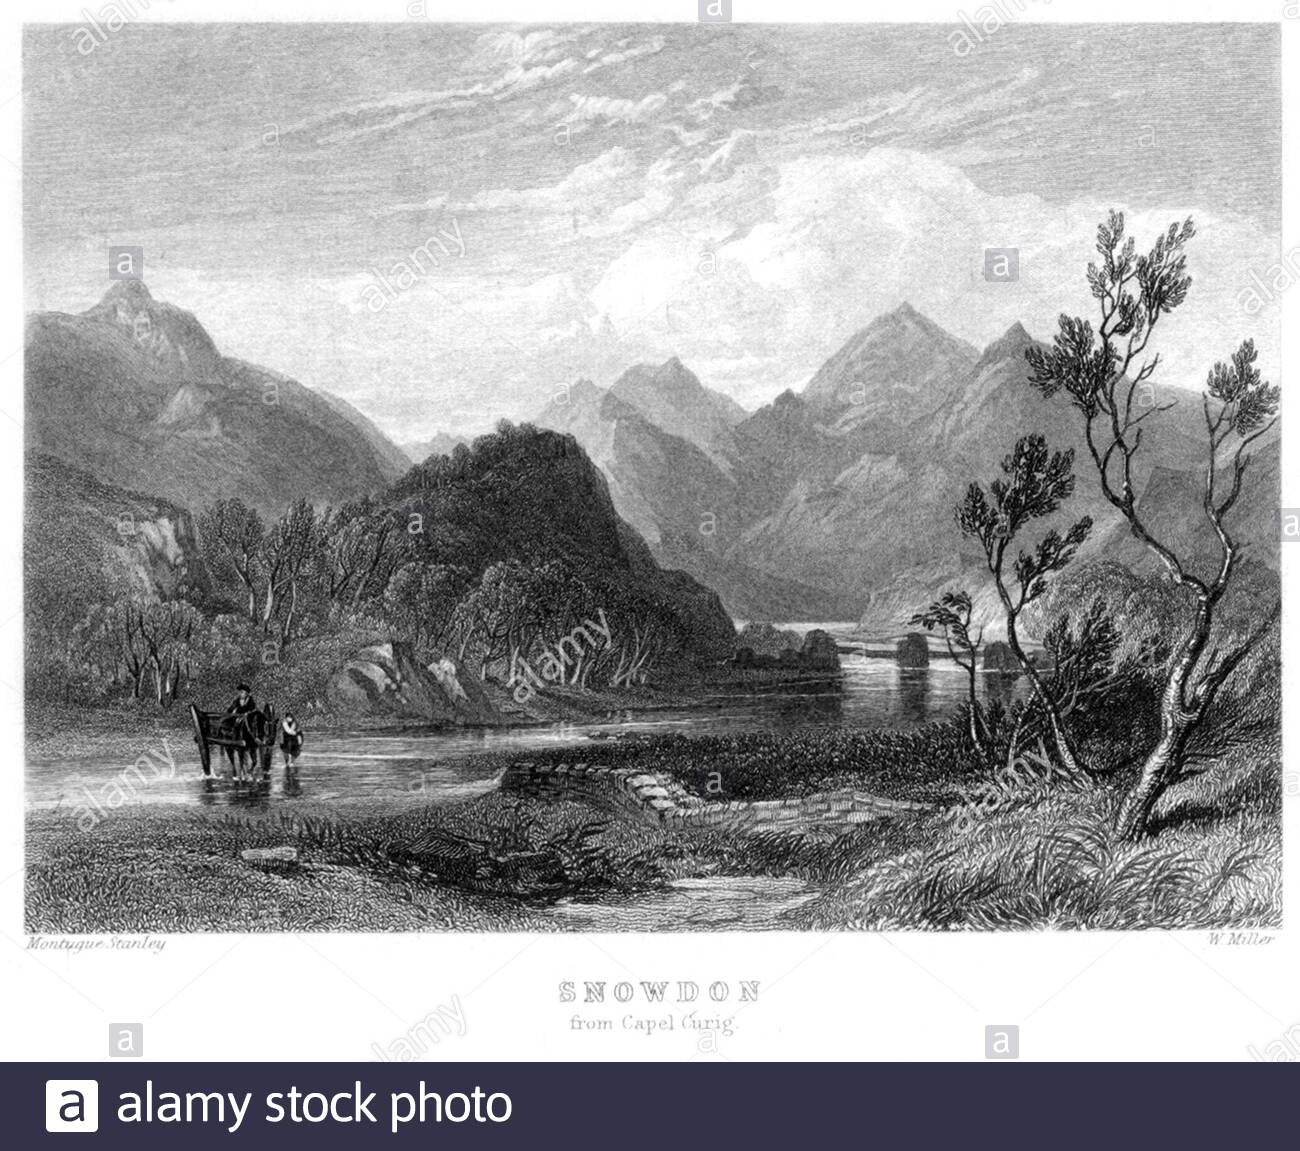 Snowdon di Capel Curig, Galles, illustrazione d'epoca del 1866 Foto Stock